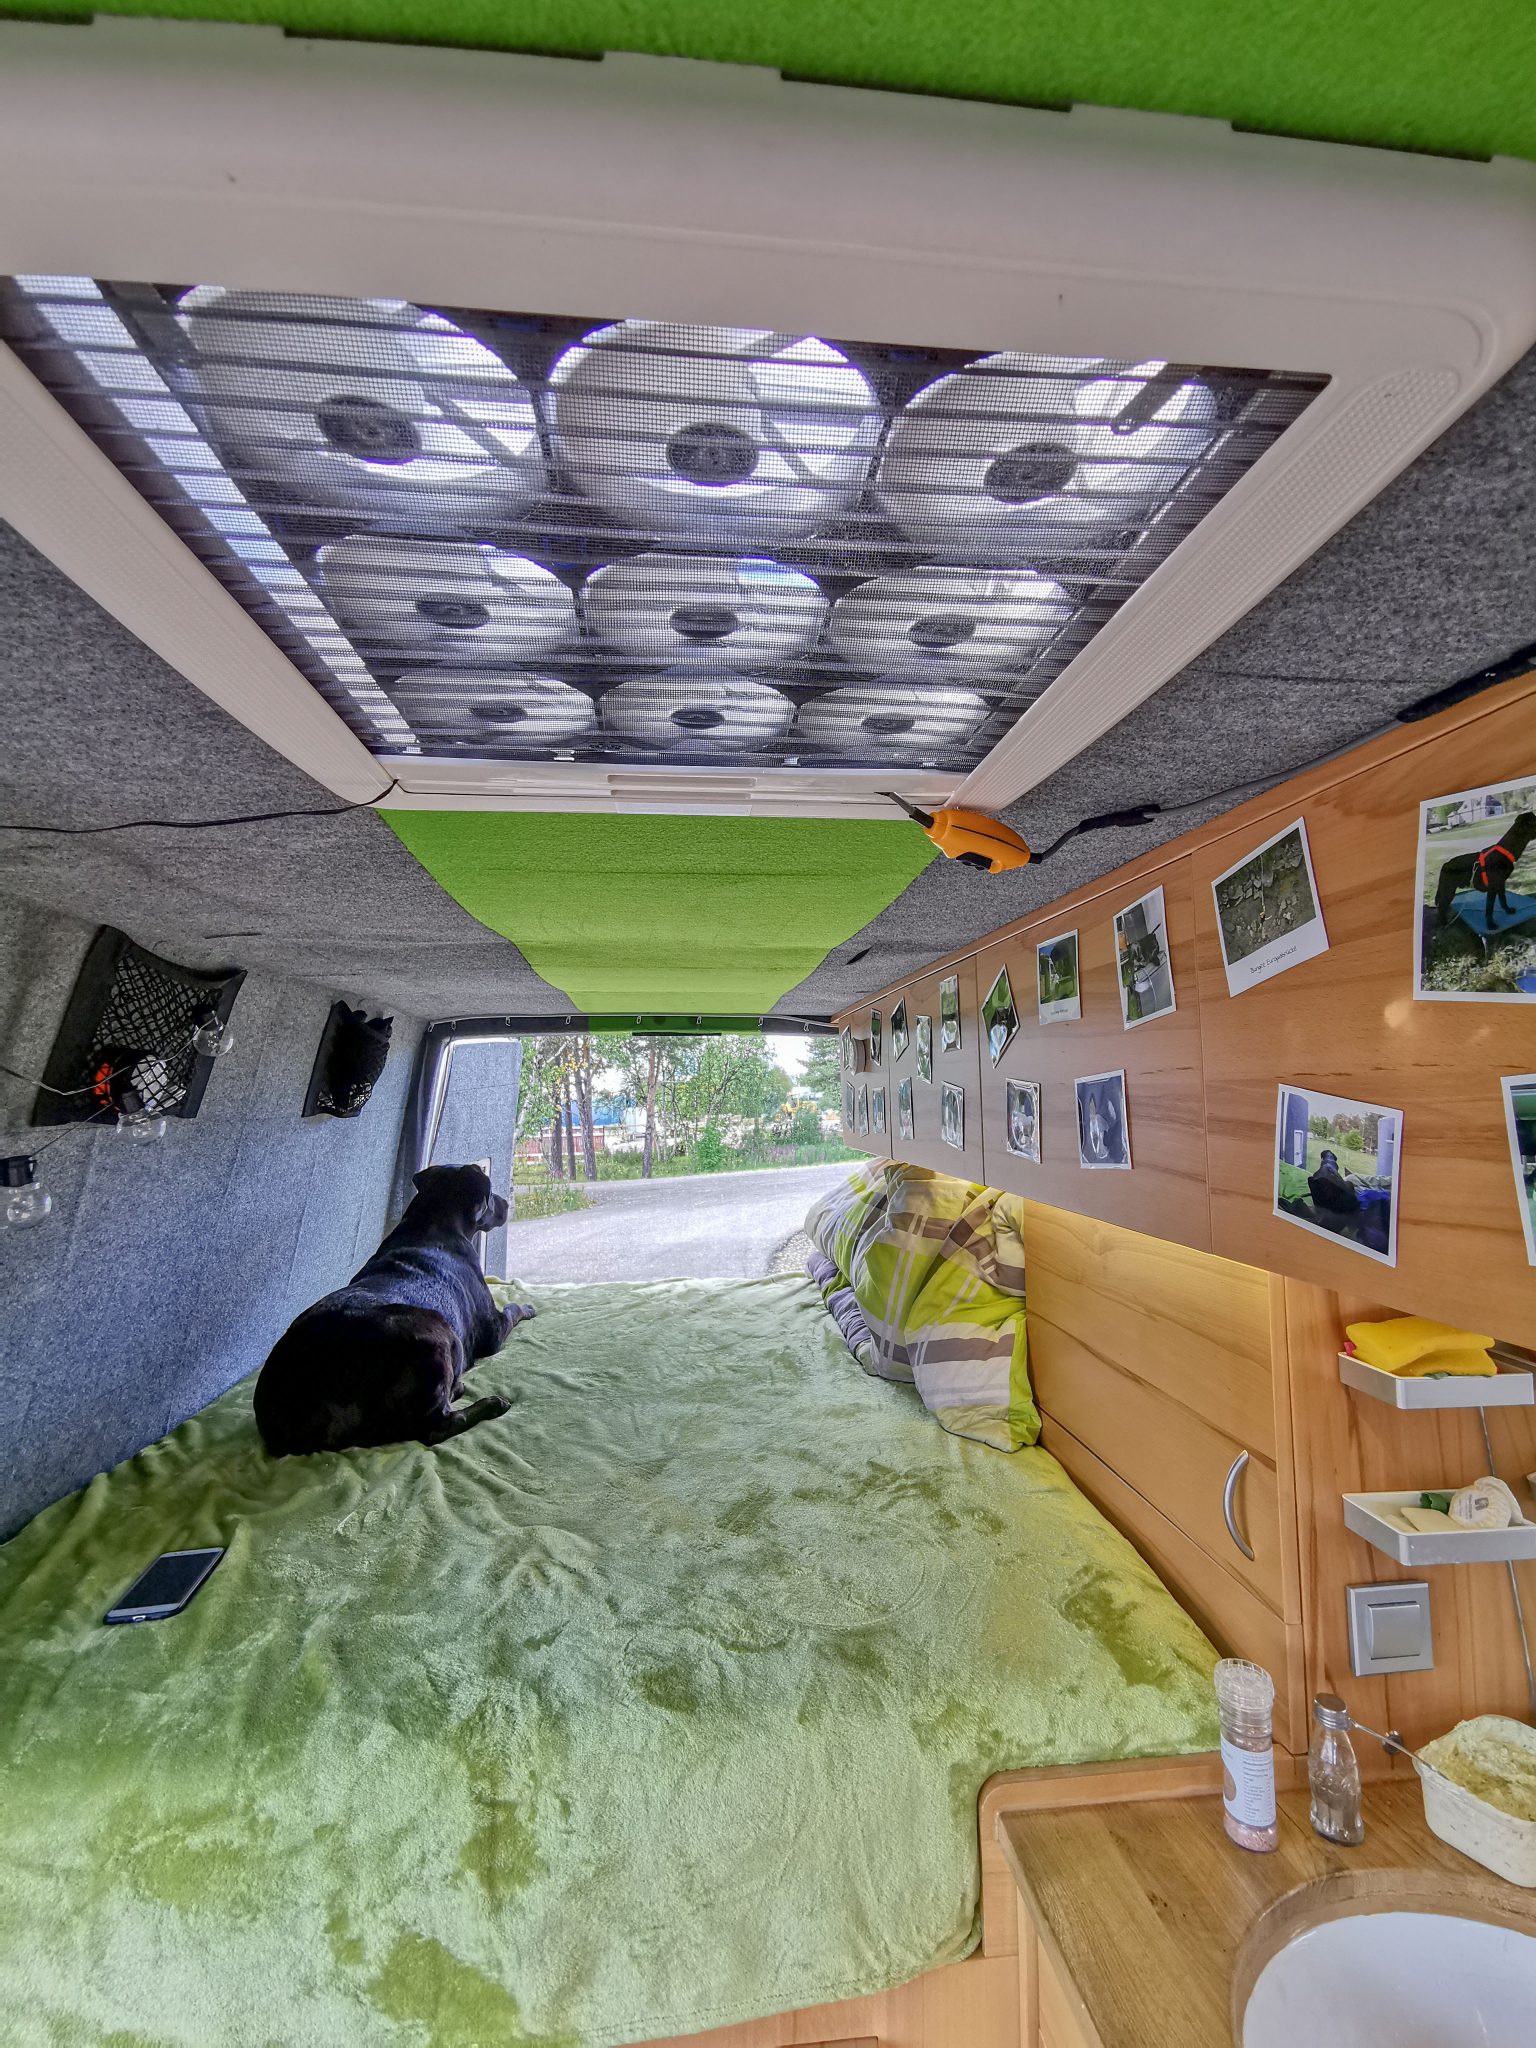 Unser Camper Ausbau - Campingbus selber ausbauen - Jack auf Reisen